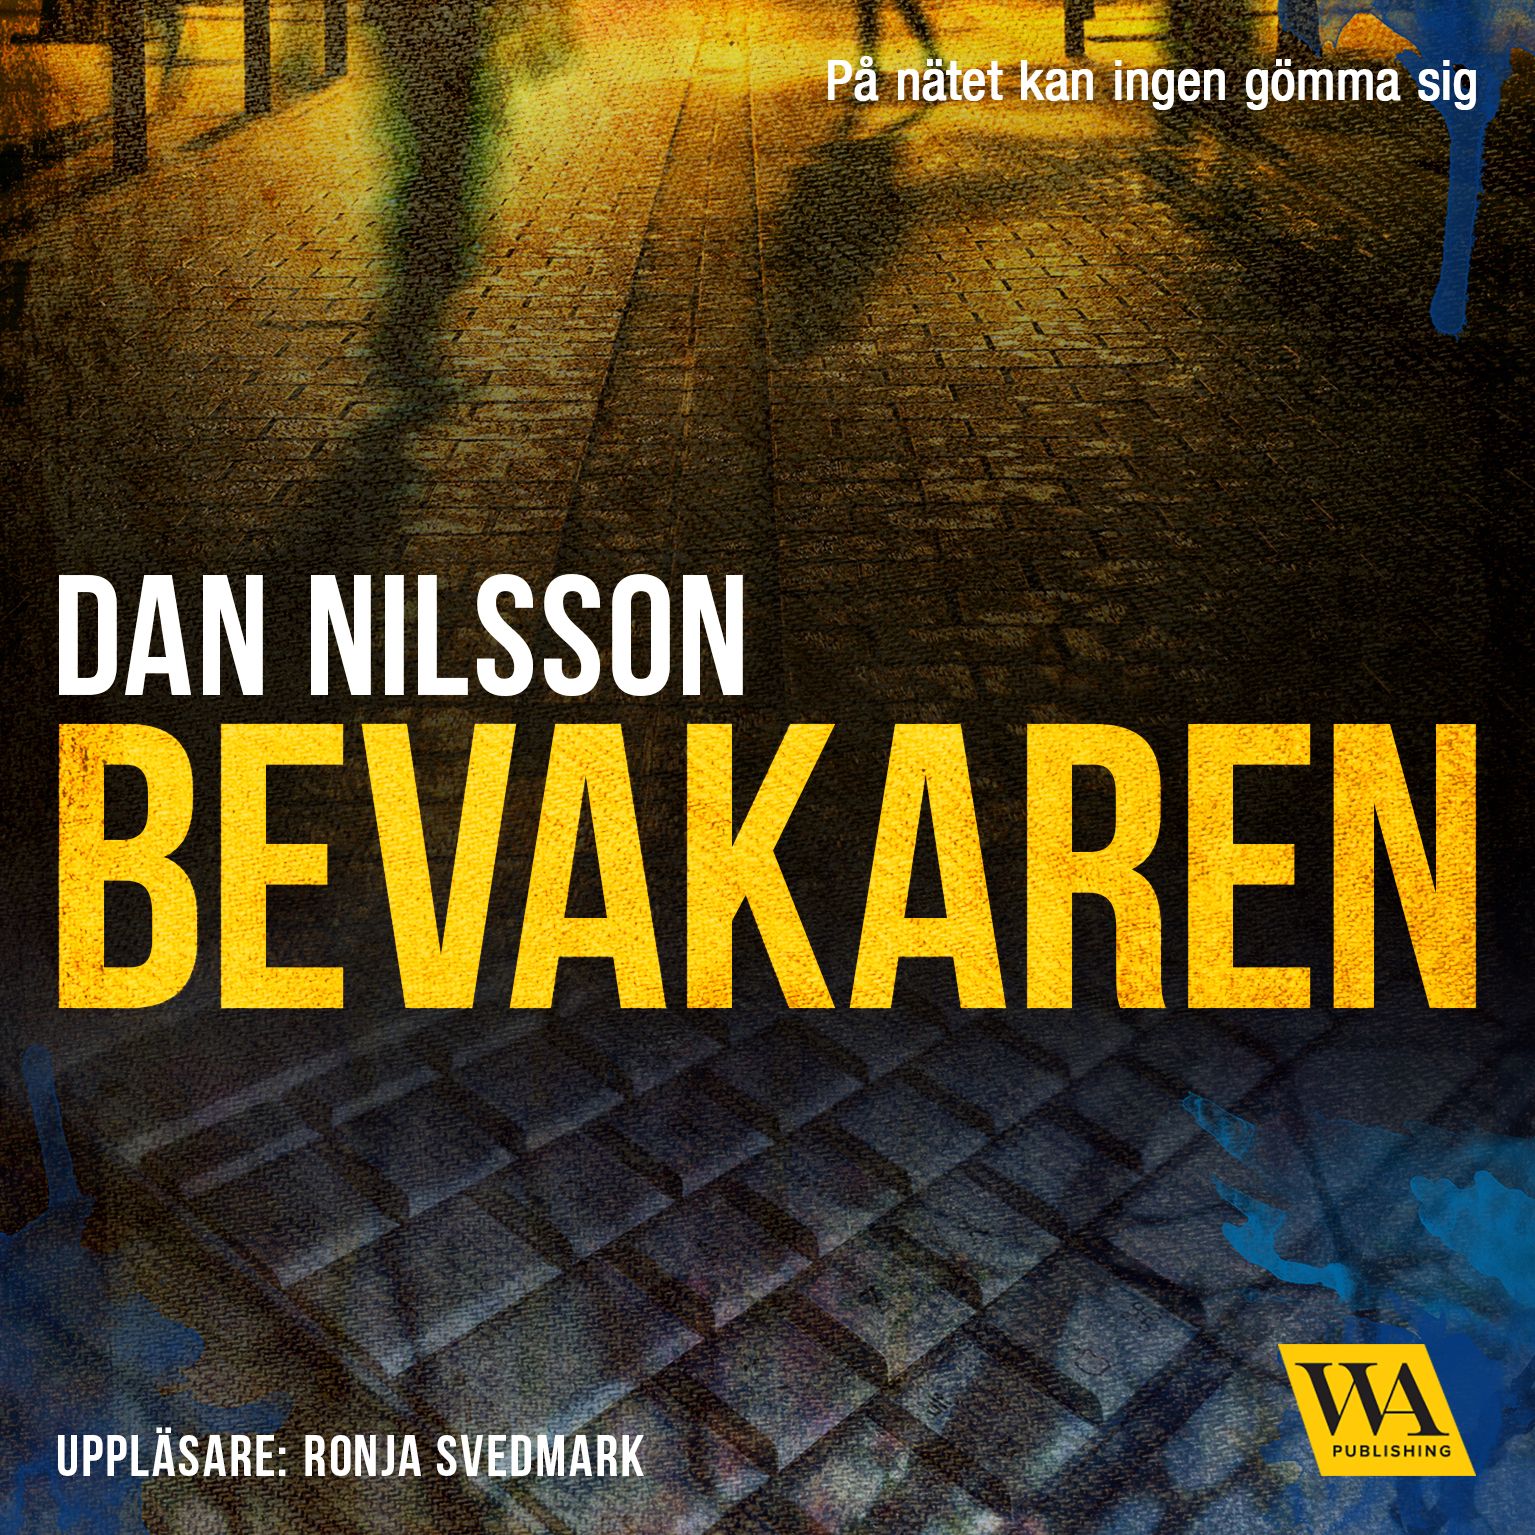 Bevakaren, ljudbok av Dan Nilsson